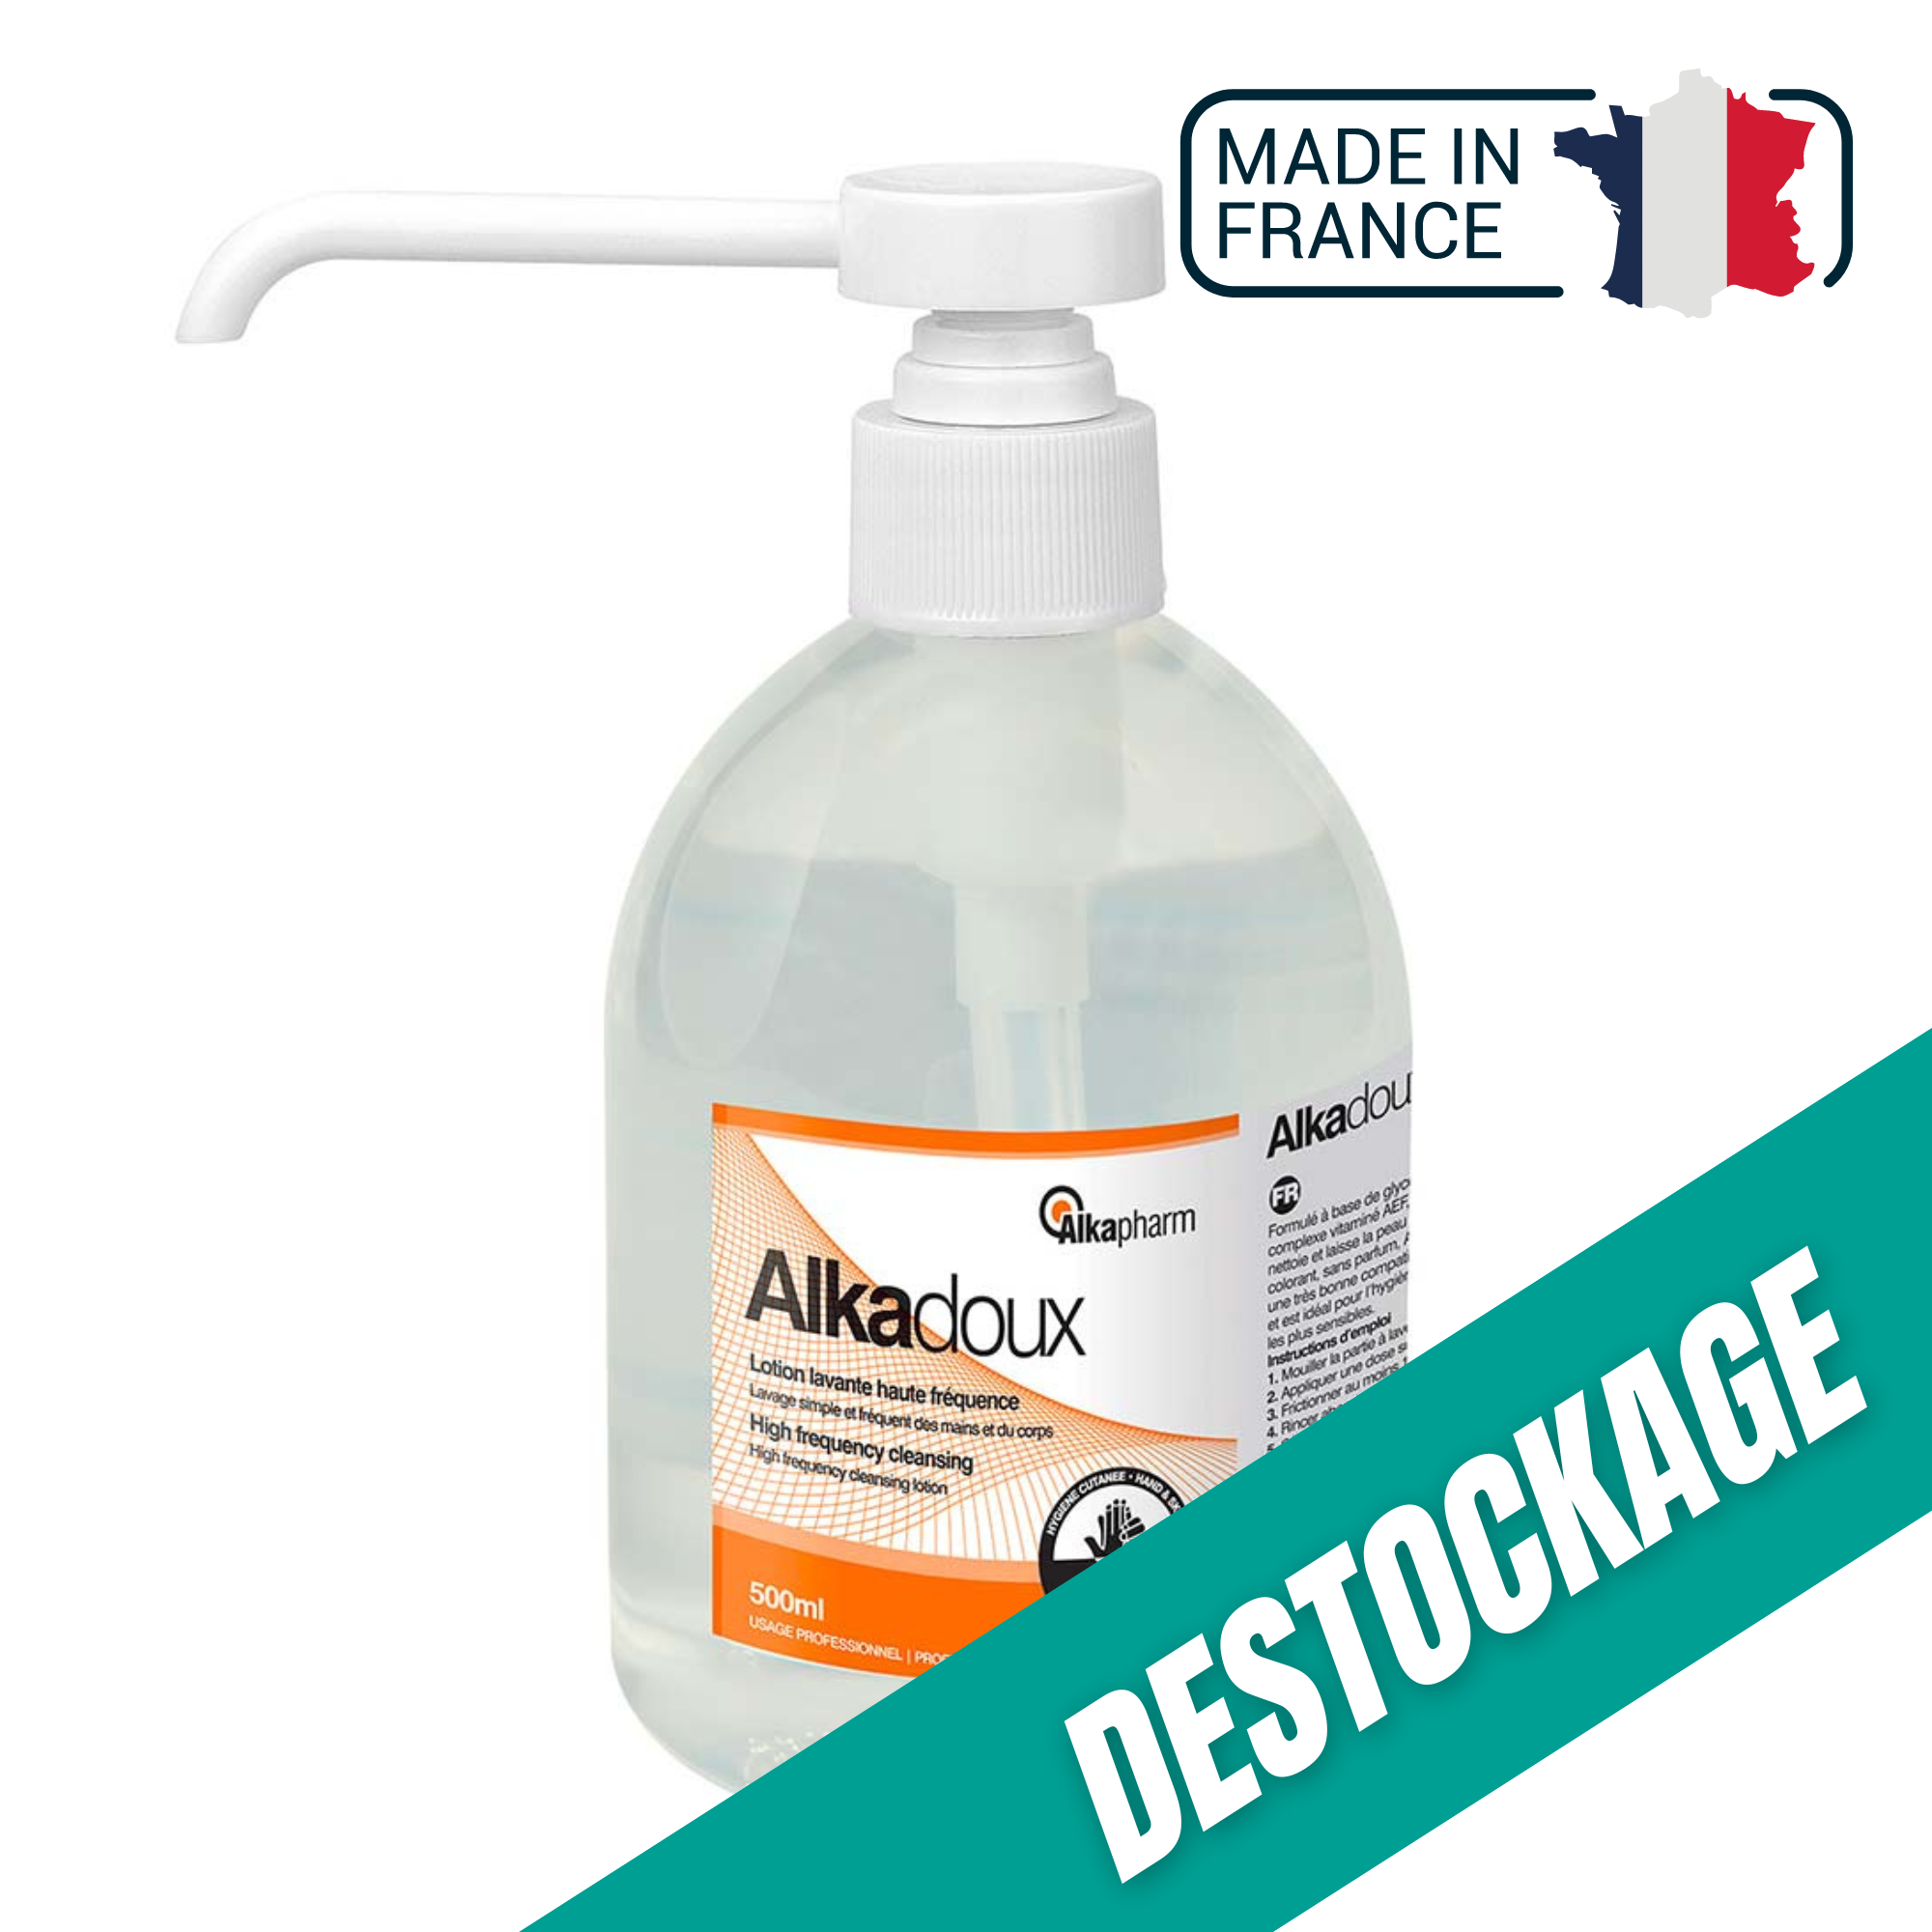 Alkadoux - Lotion lavante haute fréquence à pH neutre - Flacon pompe - 500 ml - Alkapharm // Destockage